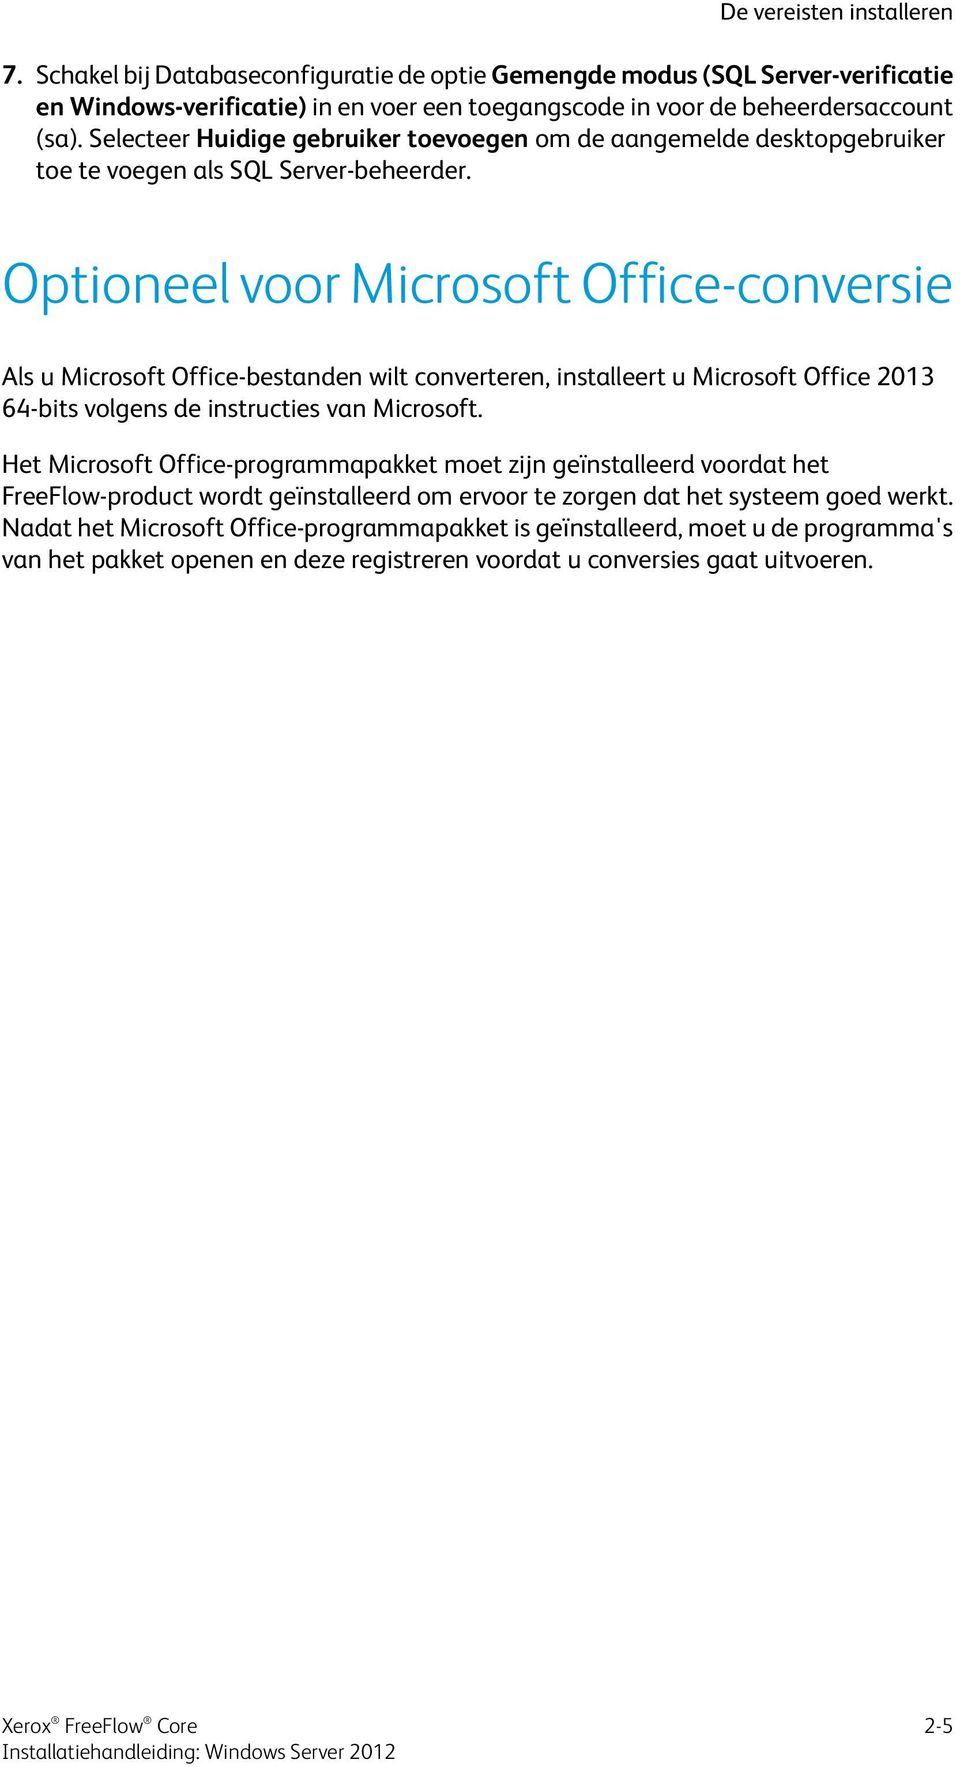 Optioneel voor Microsoft Office-conversie Als u Microsoft Office-bestanden wilt converteren, installeert u Microsoft Office 2013 64-bits volgens de instructies van Microsoft.